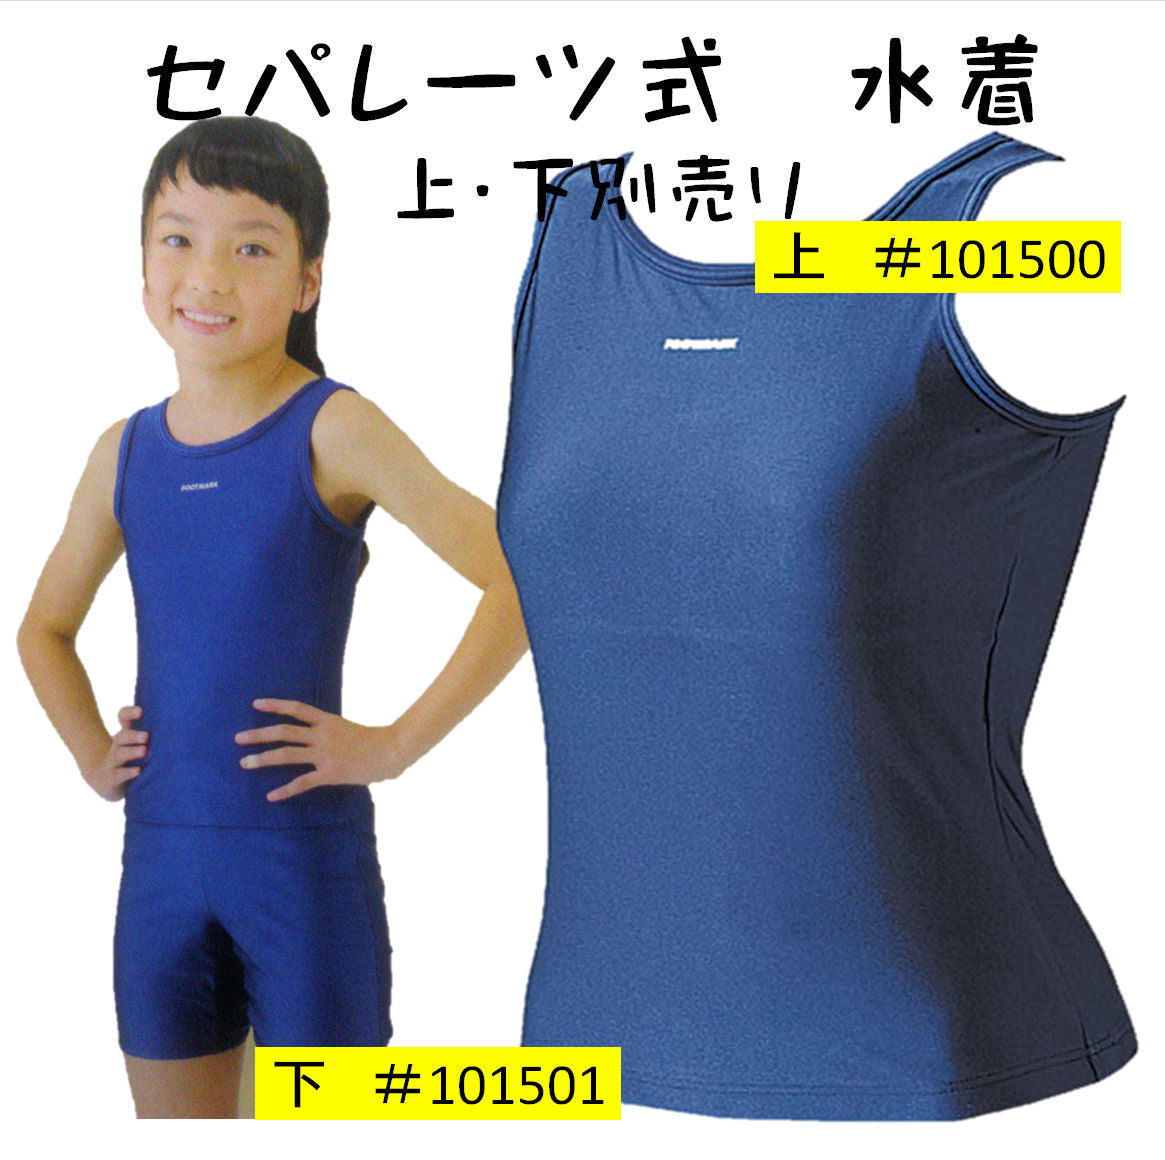 【フットマーク】セパレーツスクール水着 上 競泳型 女子 S/M/L/2Lサイズ 小中学生用 日本製 水泳用品